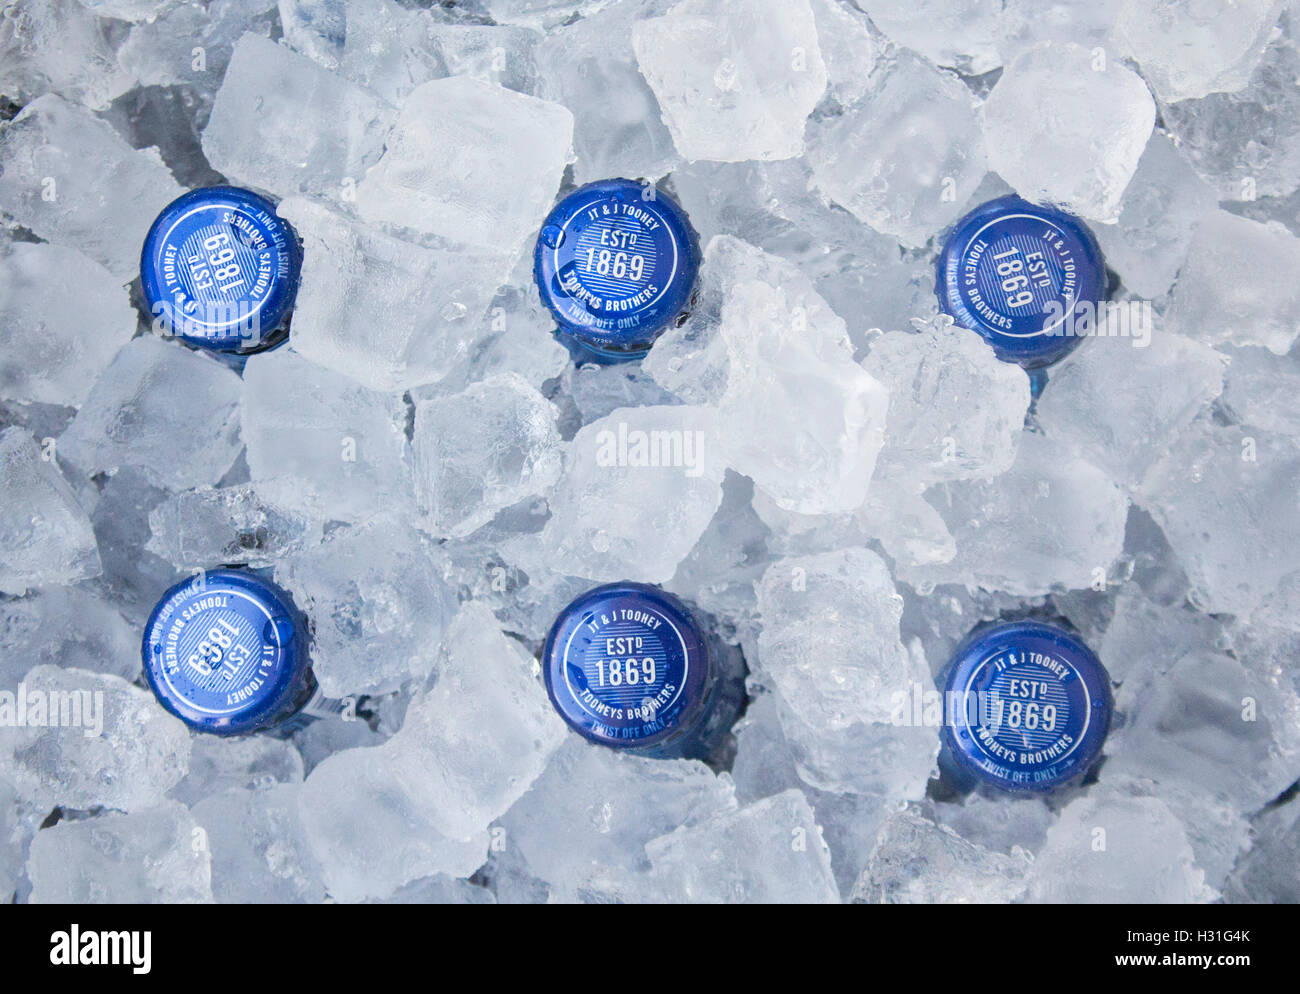 Bierflasche tops Flaschen im Eis Esky NSW Australia Stockfoto